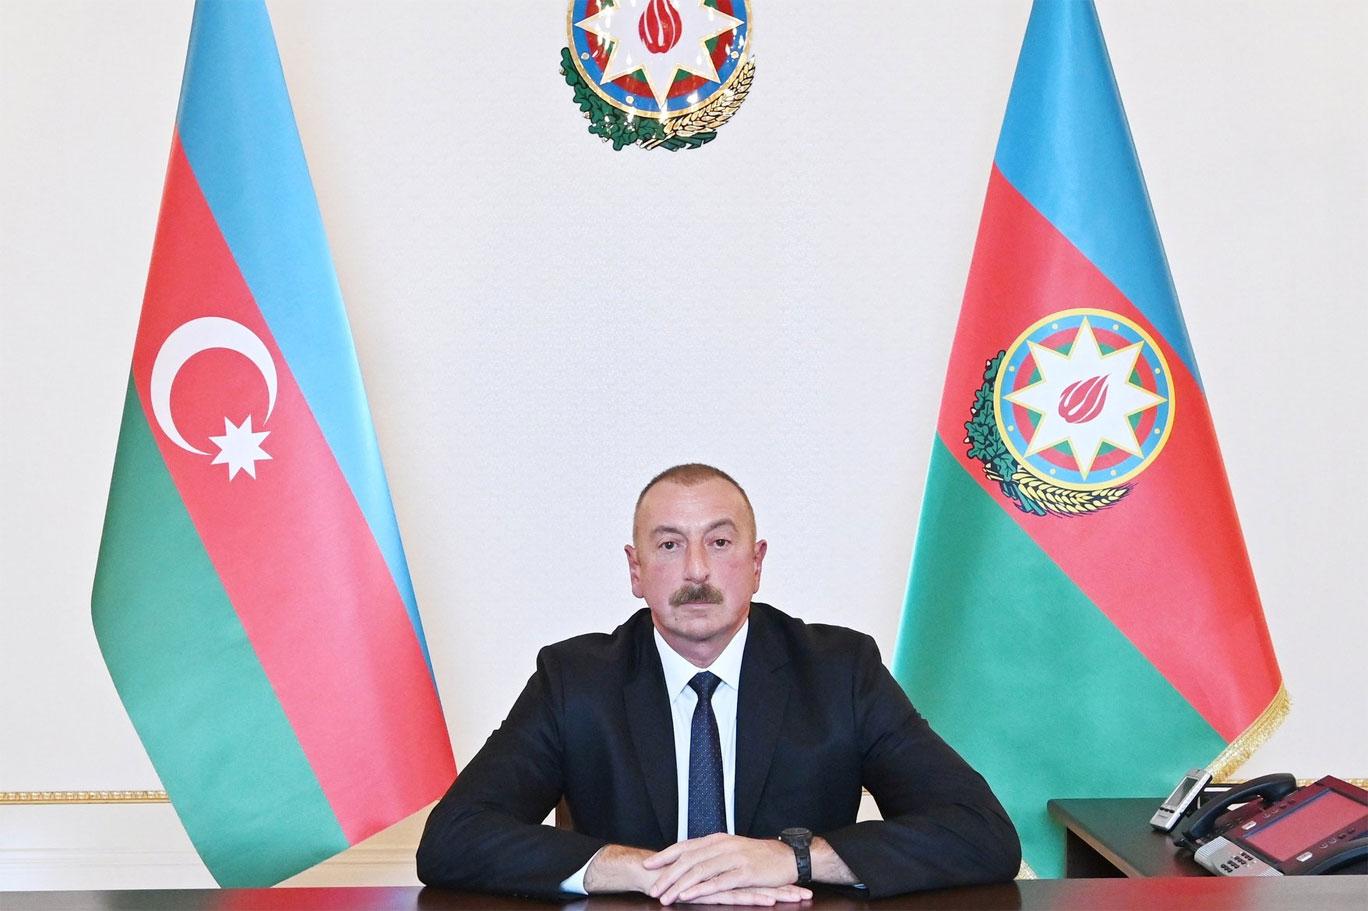 Aliyev: Azerbaycan önerdiği çerçevede barış anlaşması imzalamaması halinde  Ermenistan'ın toprak bütünlüğünü tanımayacak | Independent Türkçe